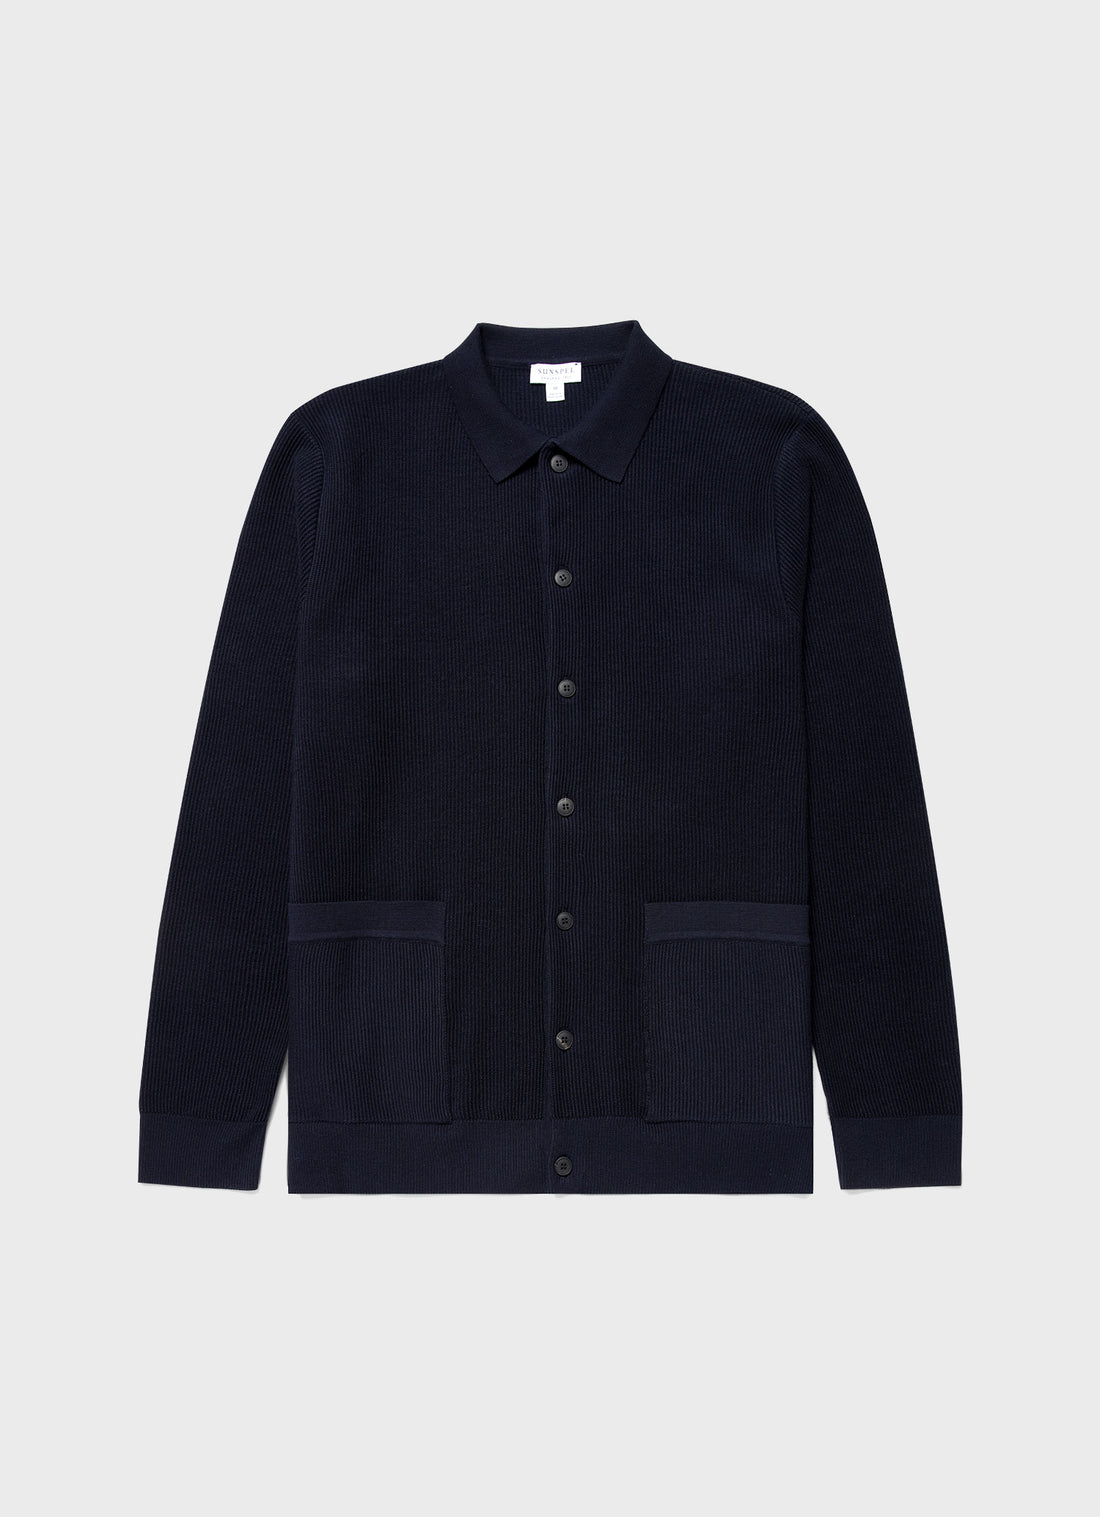 Men’s Sale Jackets & Coats | Sunspel